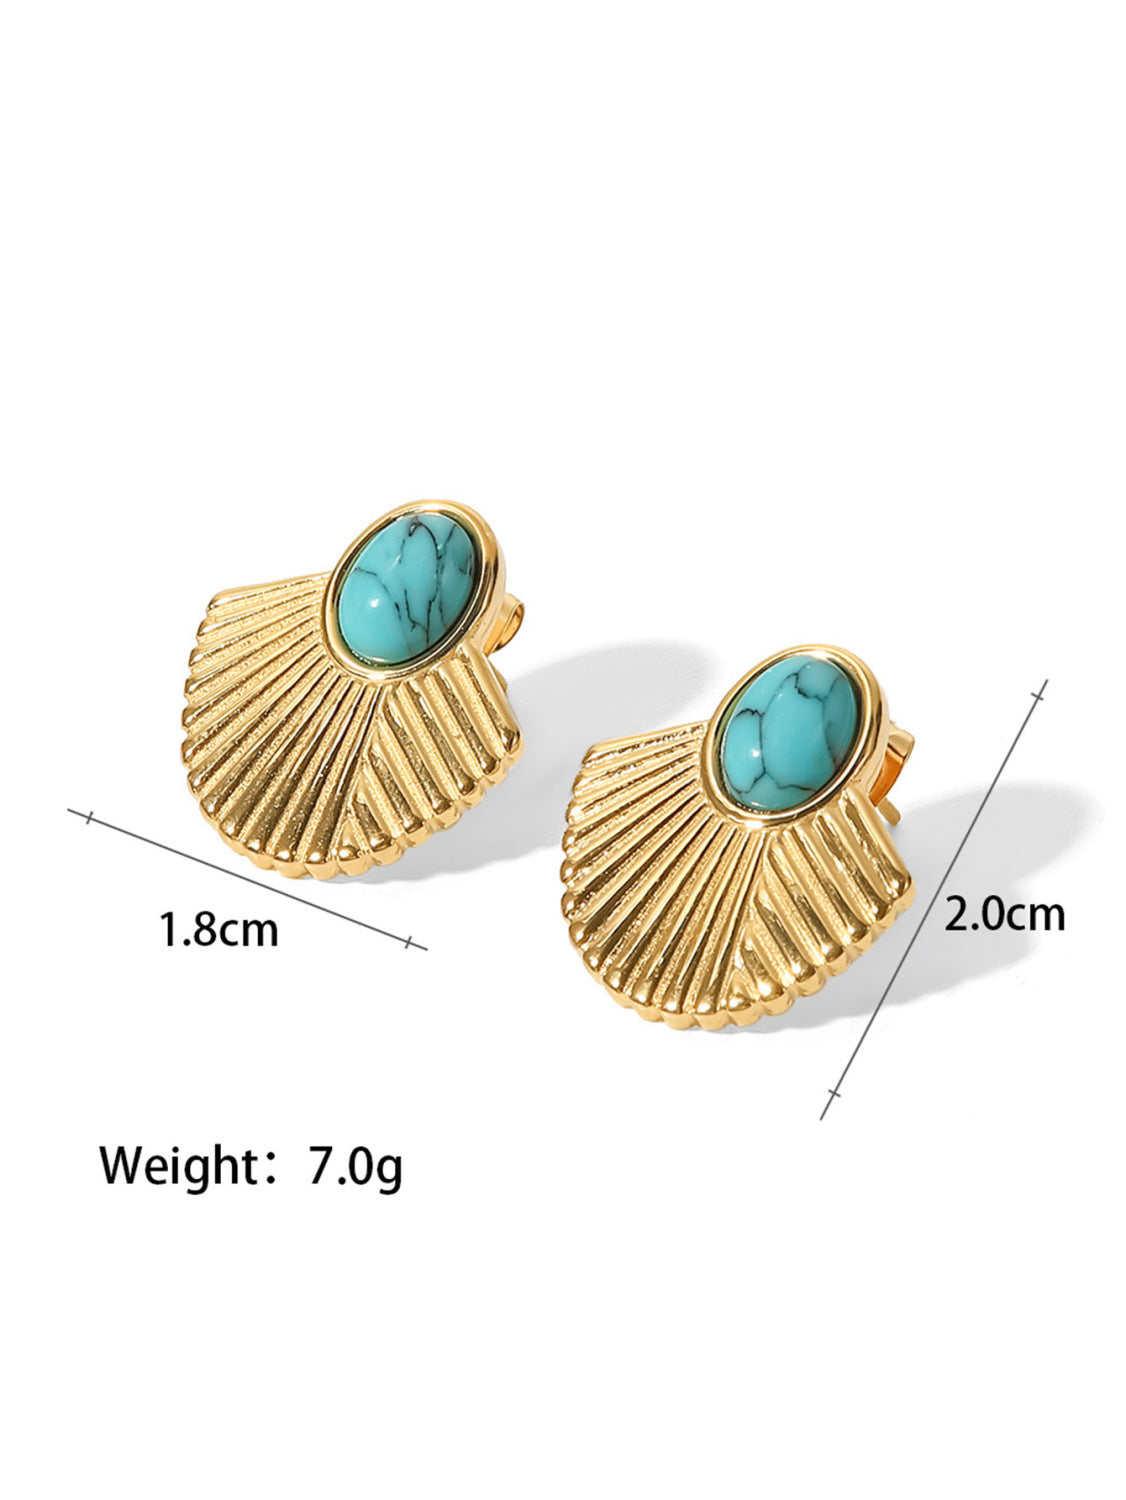 Exquisite retro style inlaid turquoise design versatile earrings